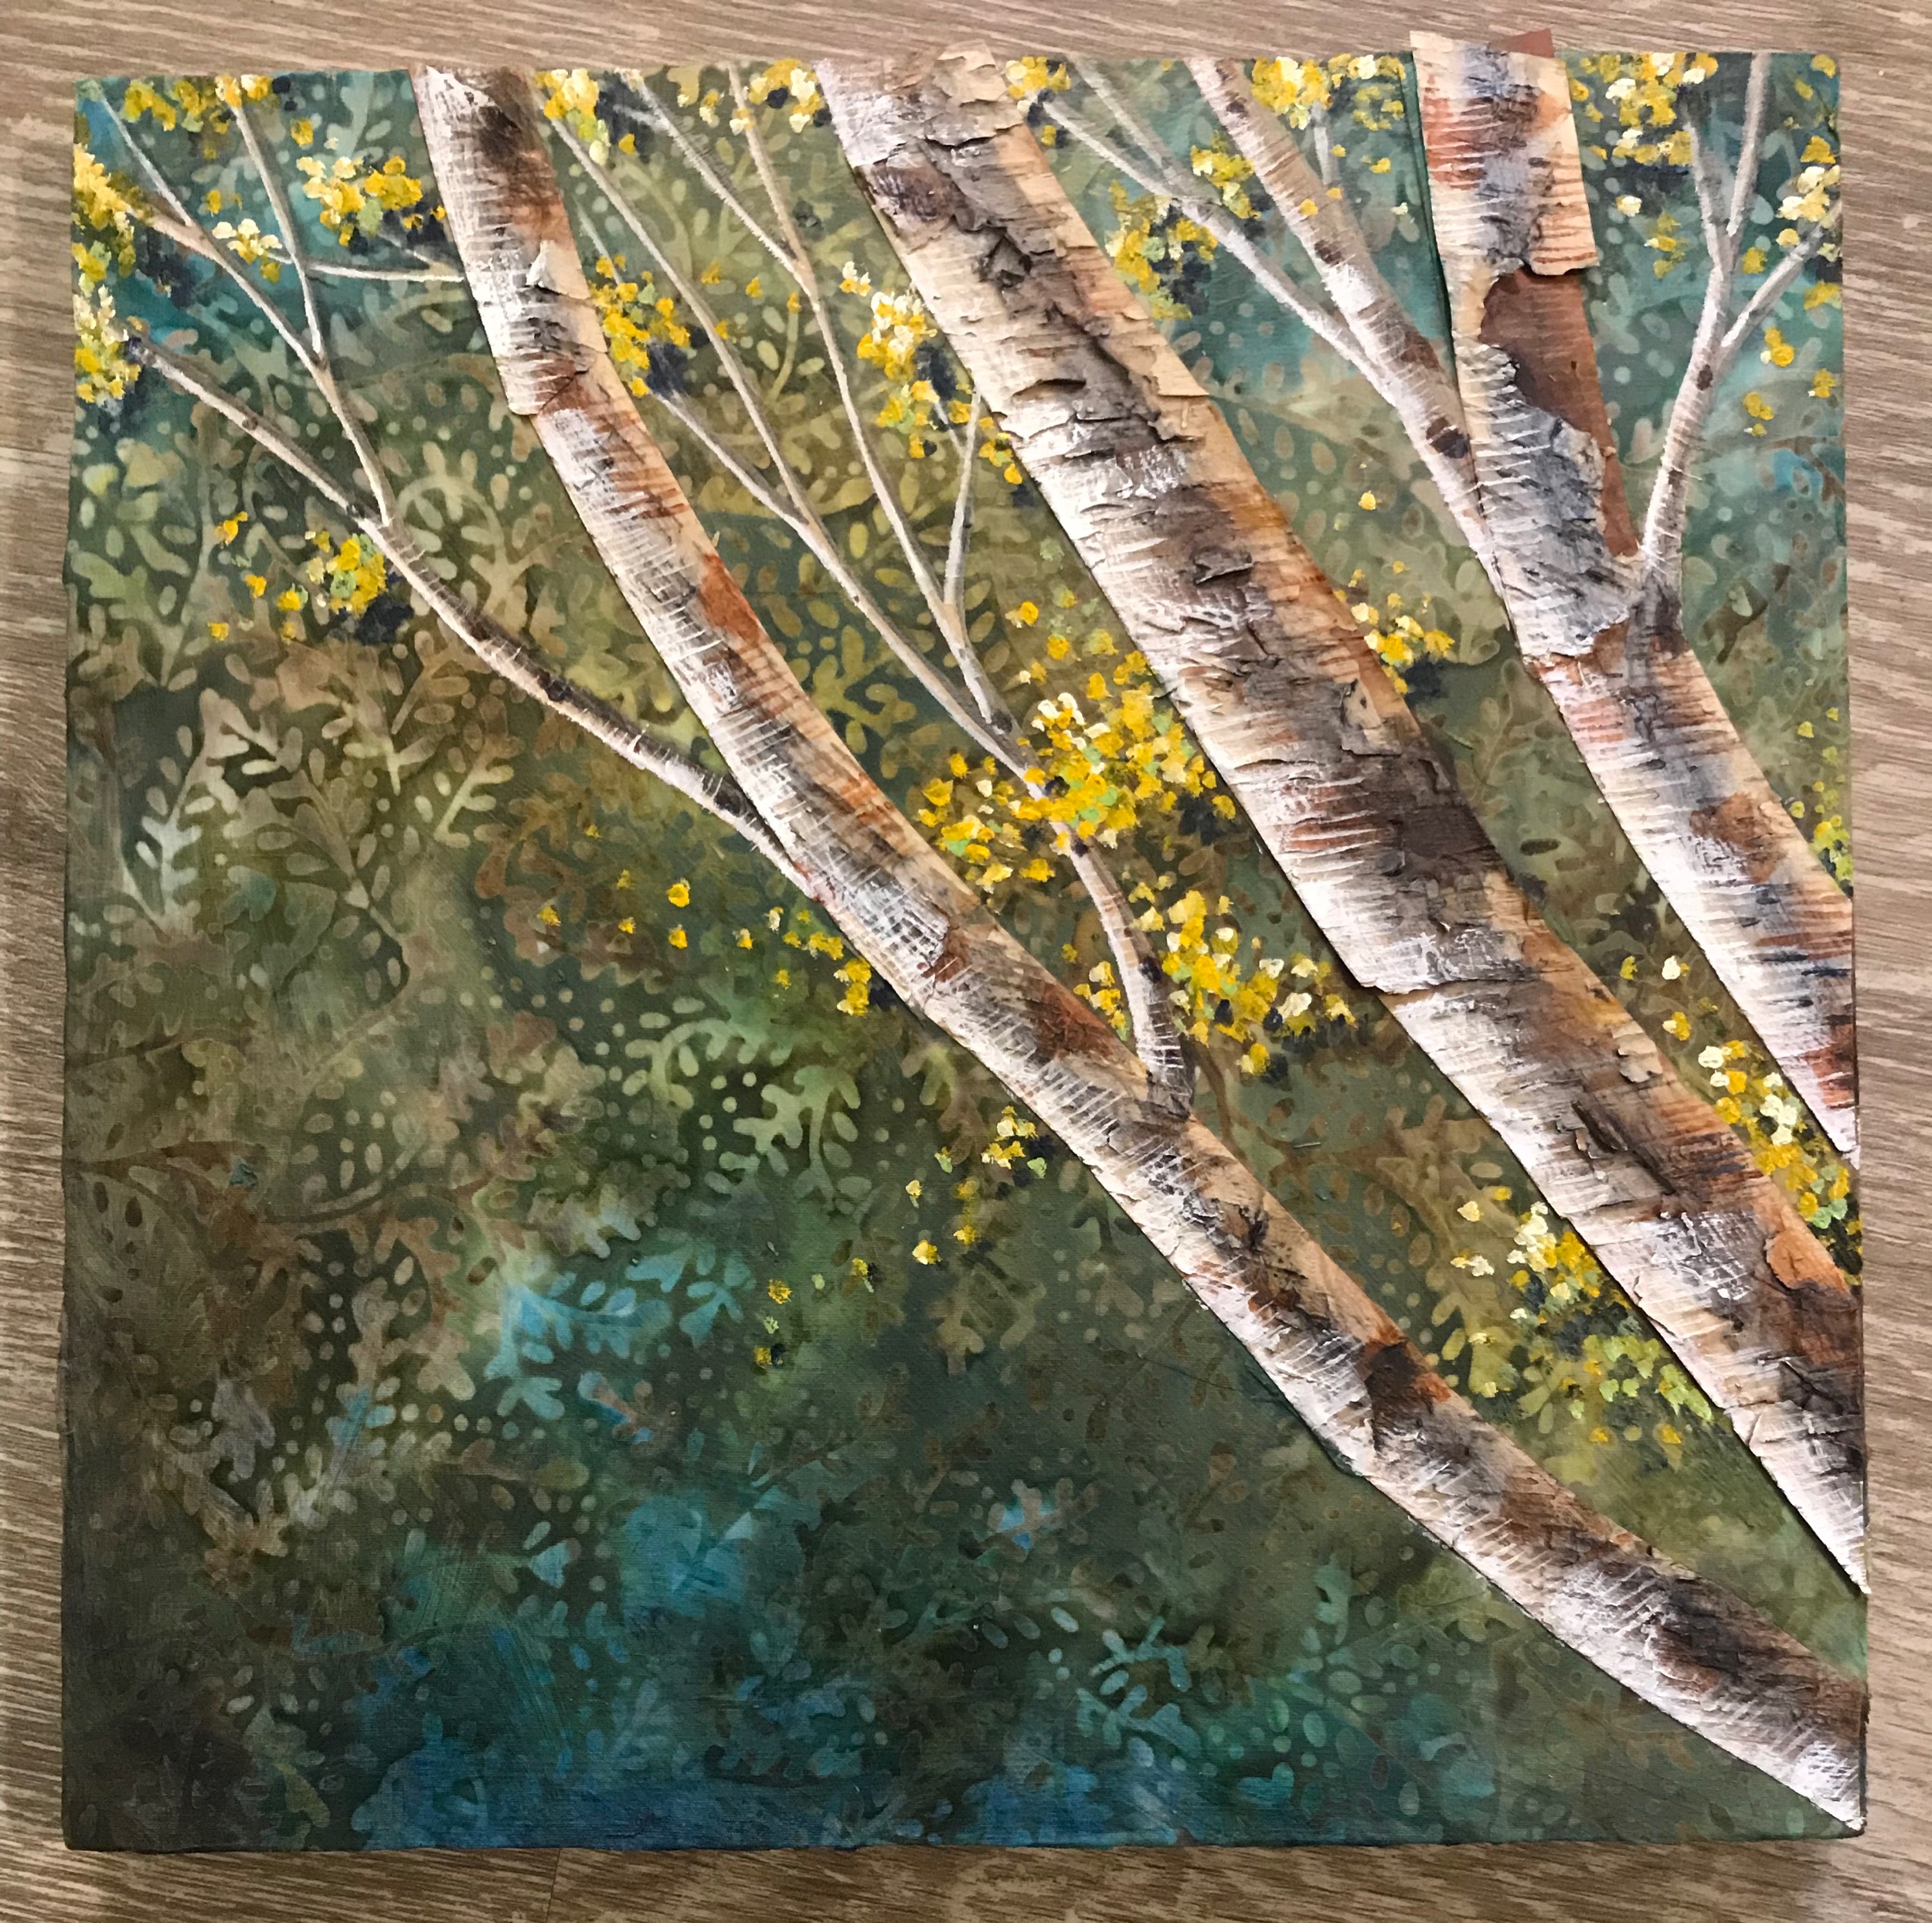  Mixed Media: birch bark and acrylic on fabric. 10” x 10” 